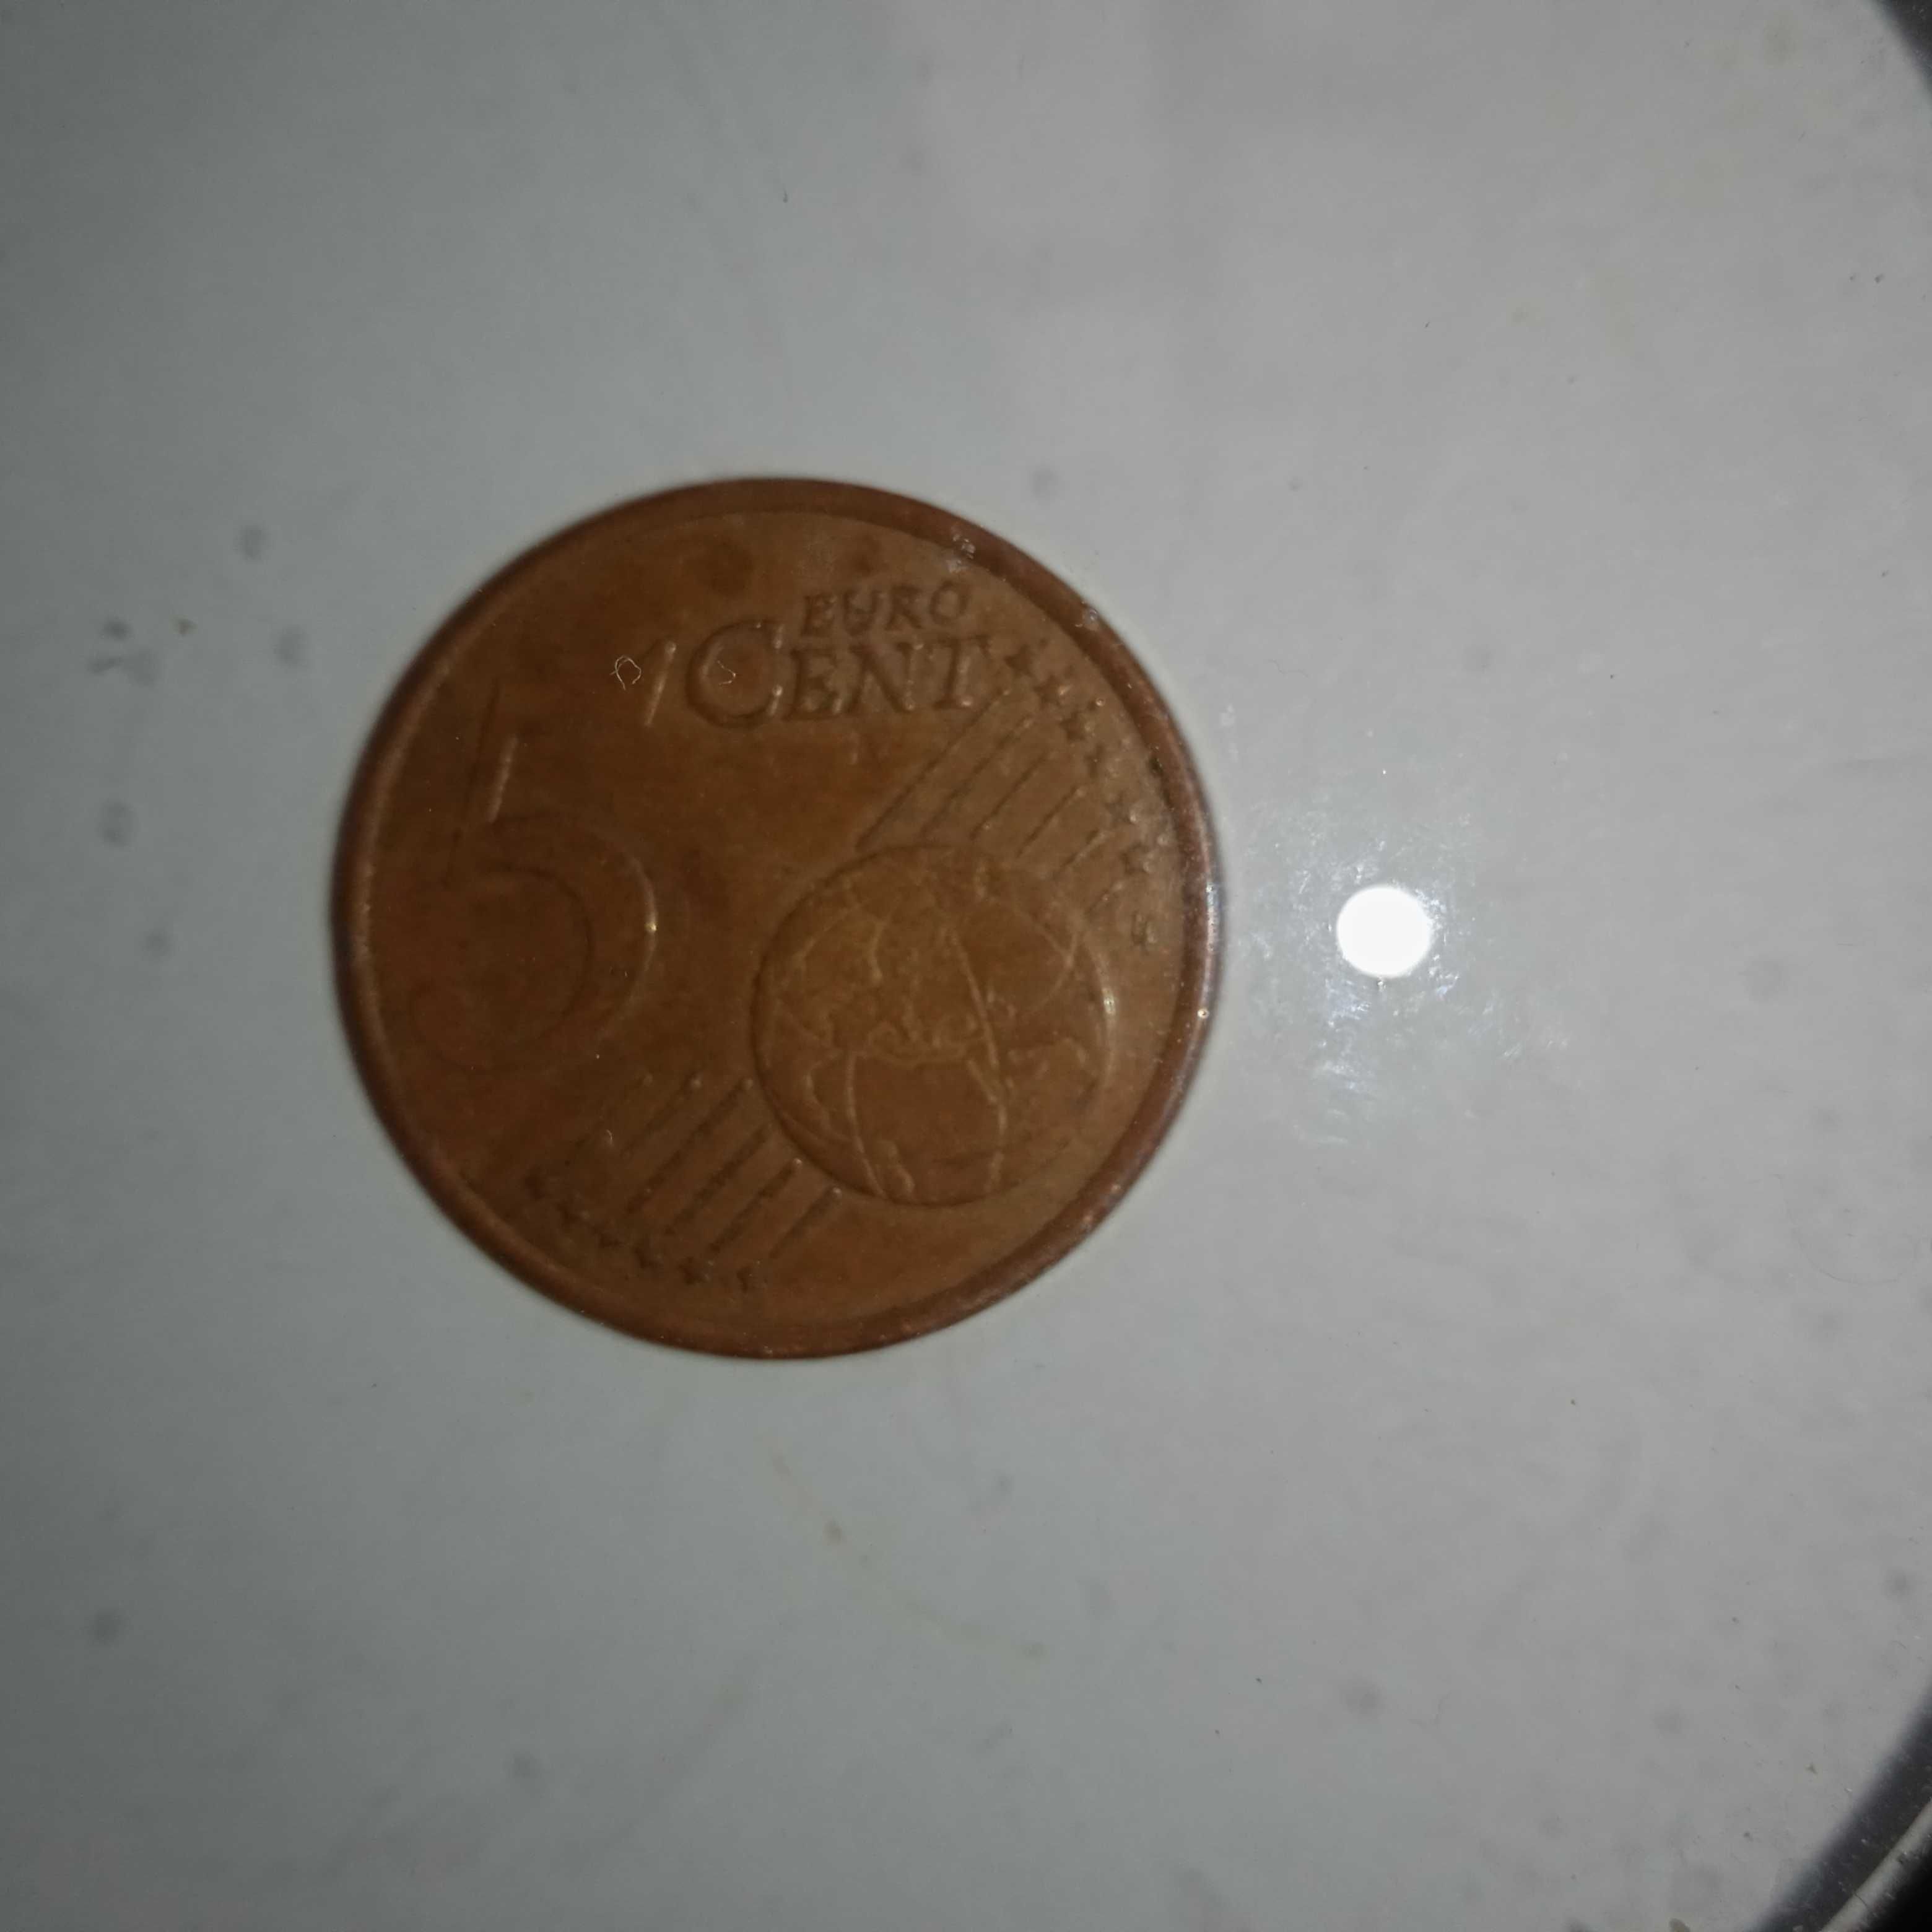 Vendo moedas de cinco centimos de França